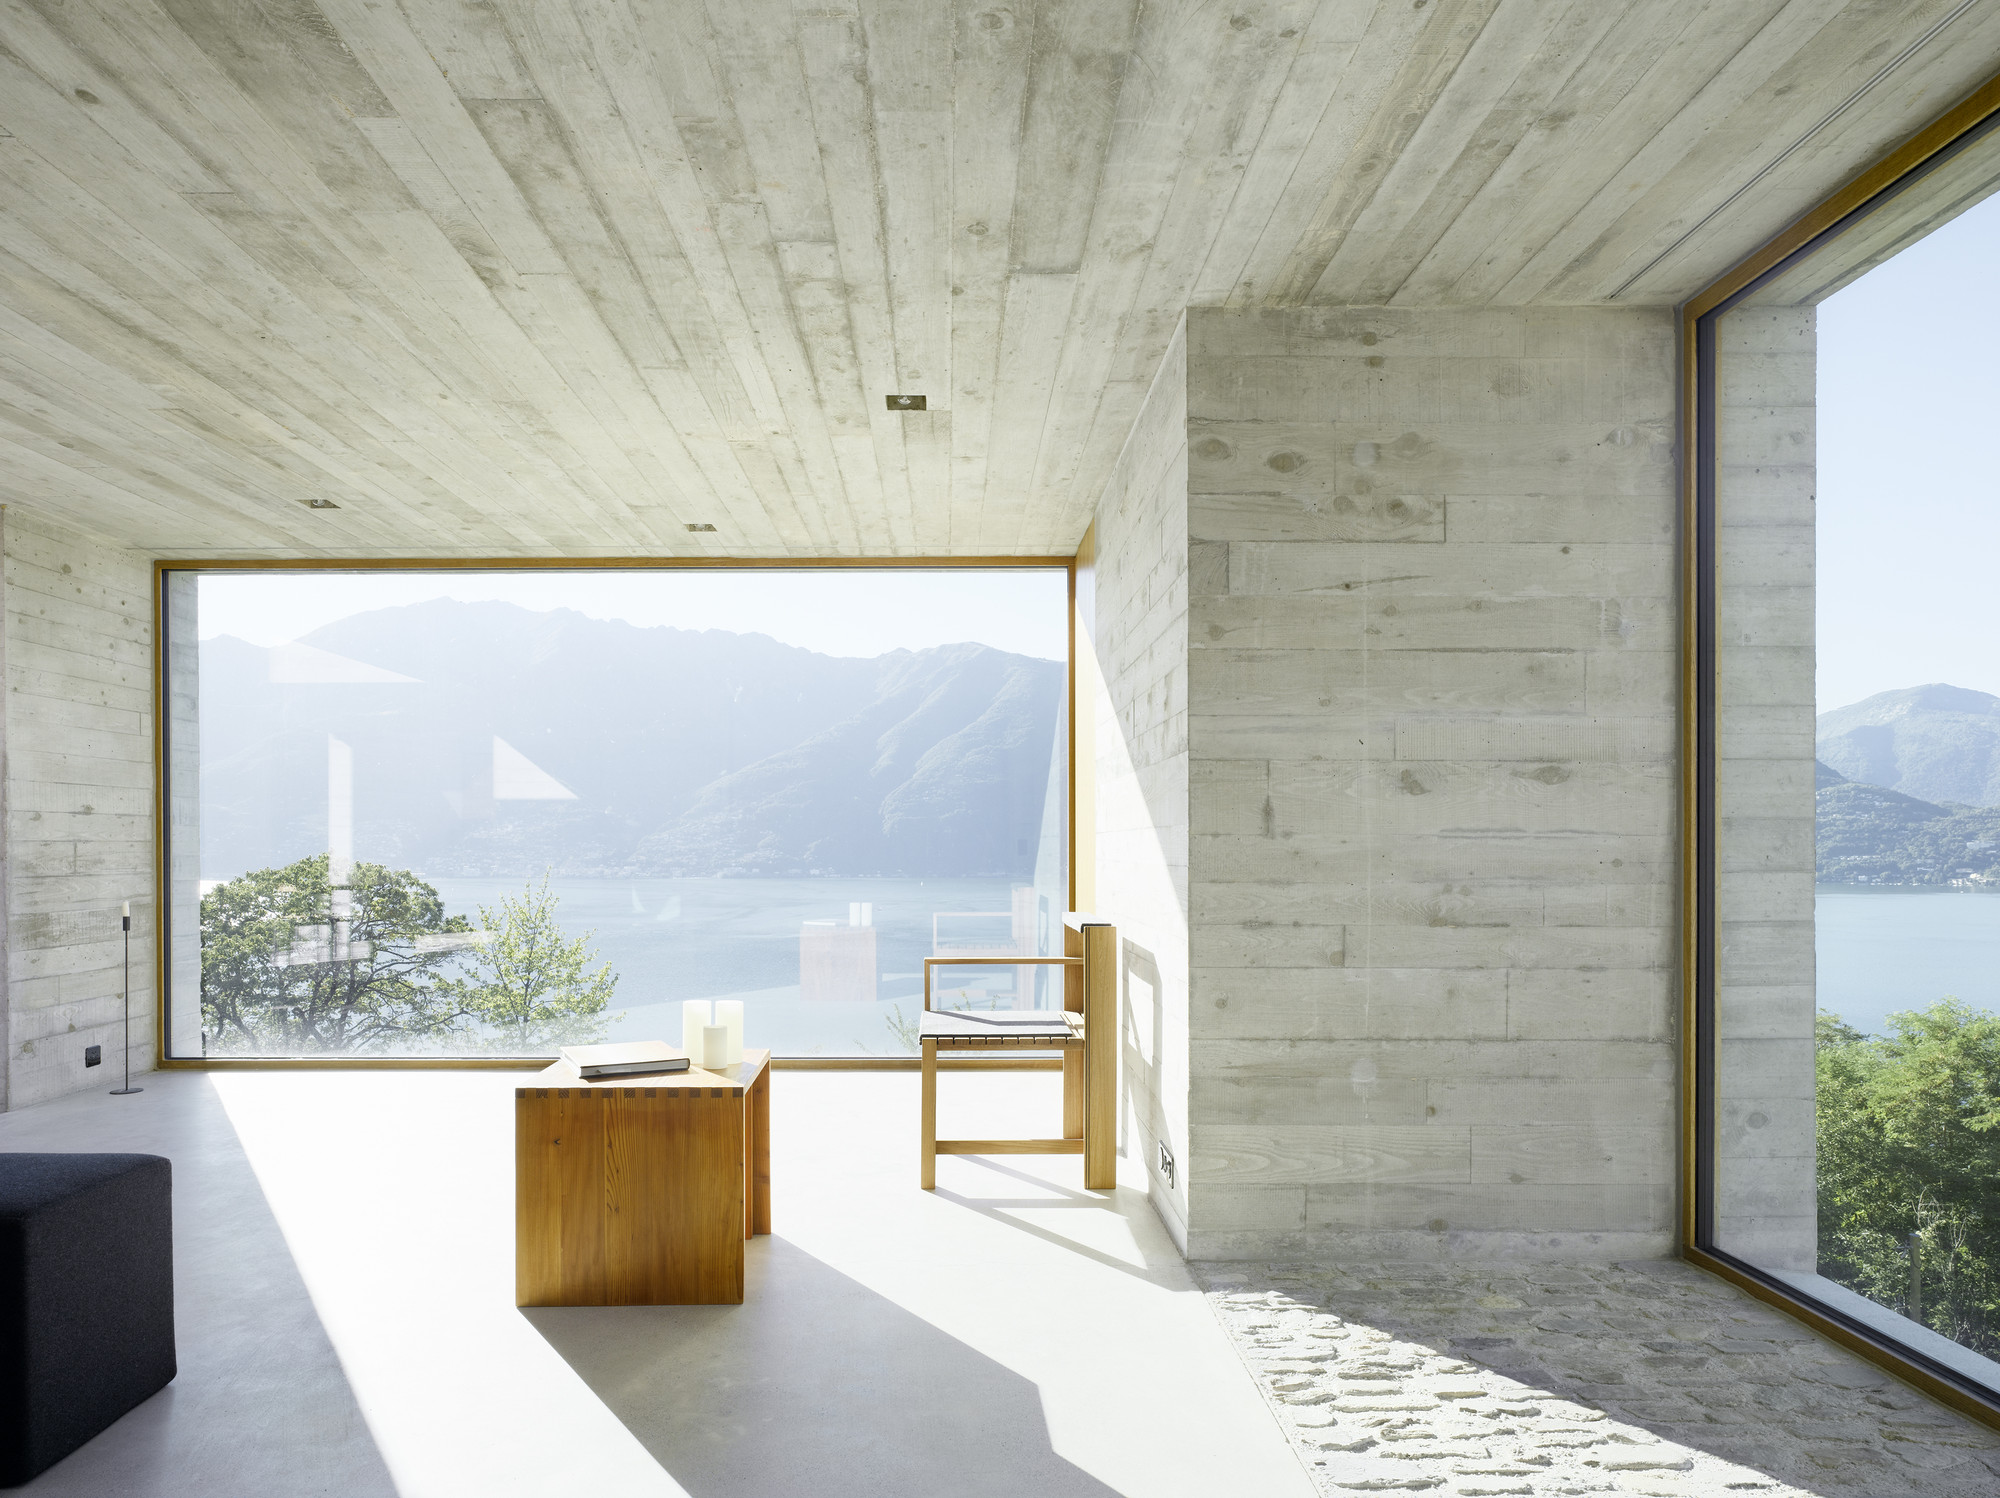 Gallery of New Concrete House / Wespi de Meuron - 4